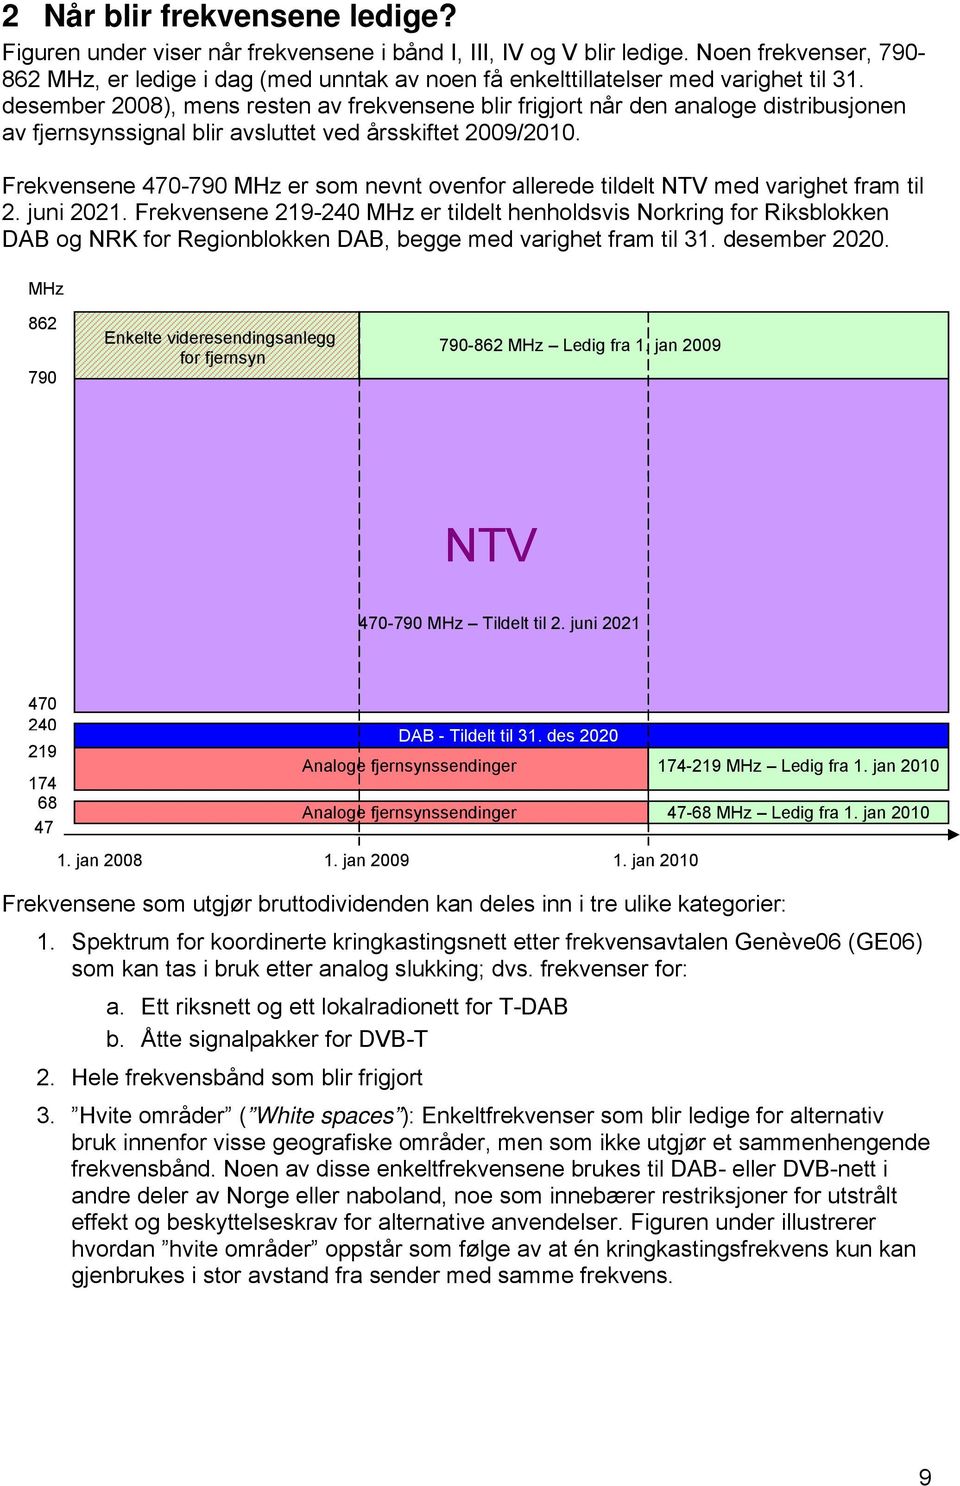 desember 2008), mens resten av frekvensene blir frigjort når den analoge distribusjonen av fjernsynssignal blir avsluttet ved årsskiftet 2009/2010.